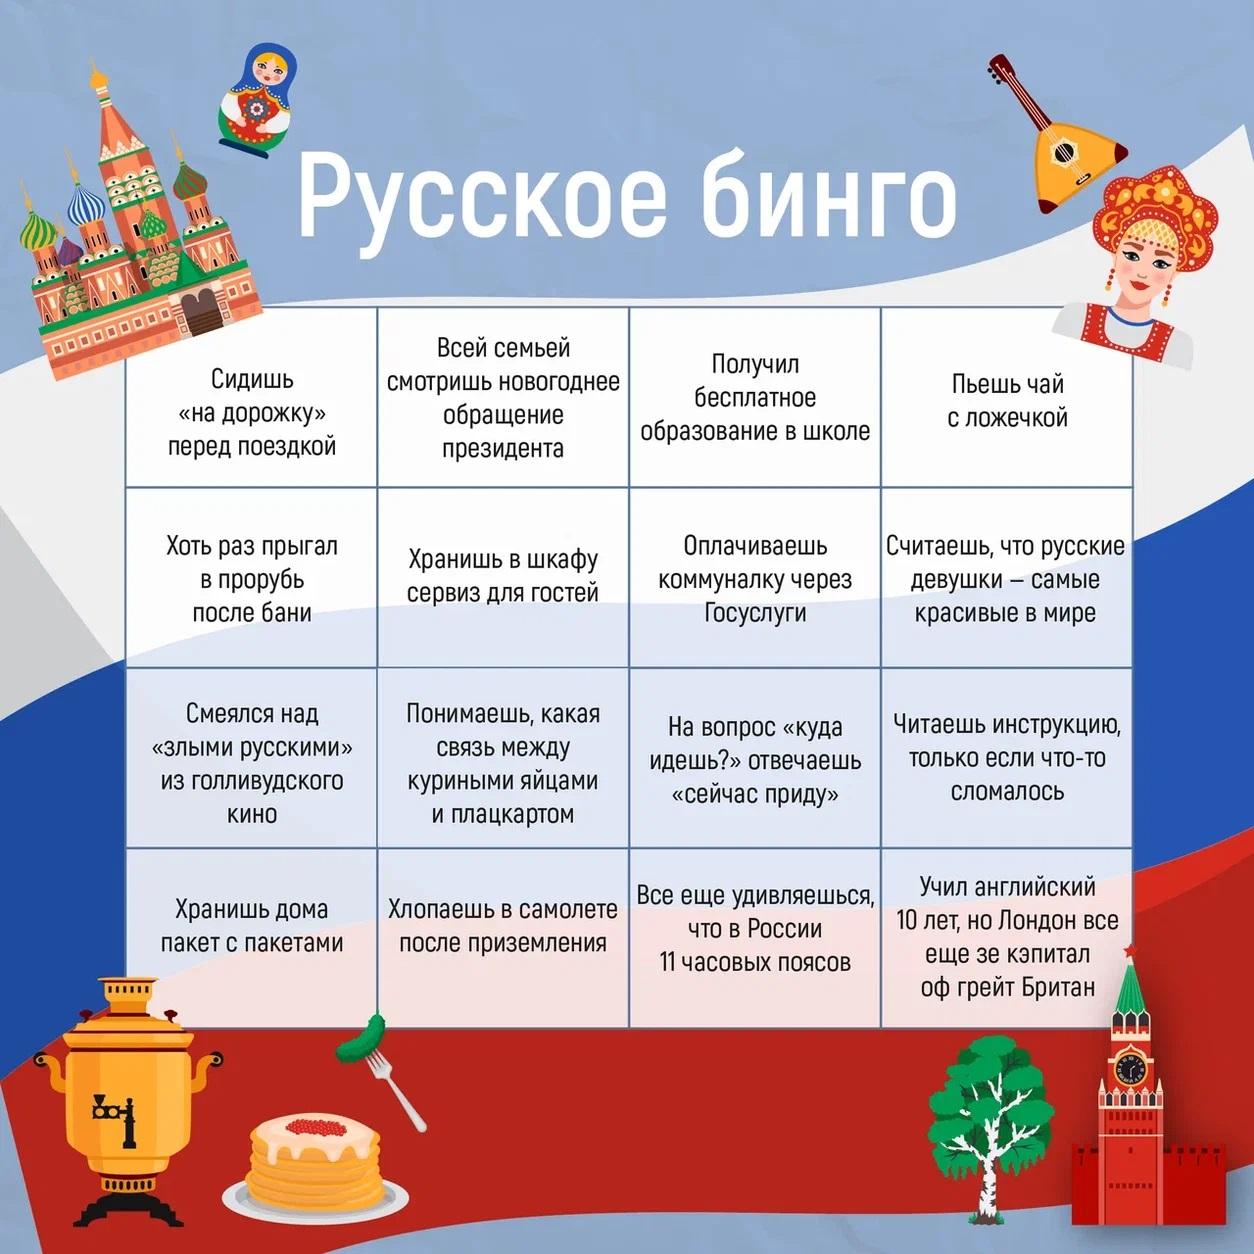 Госпаблики играют в русское бинго.